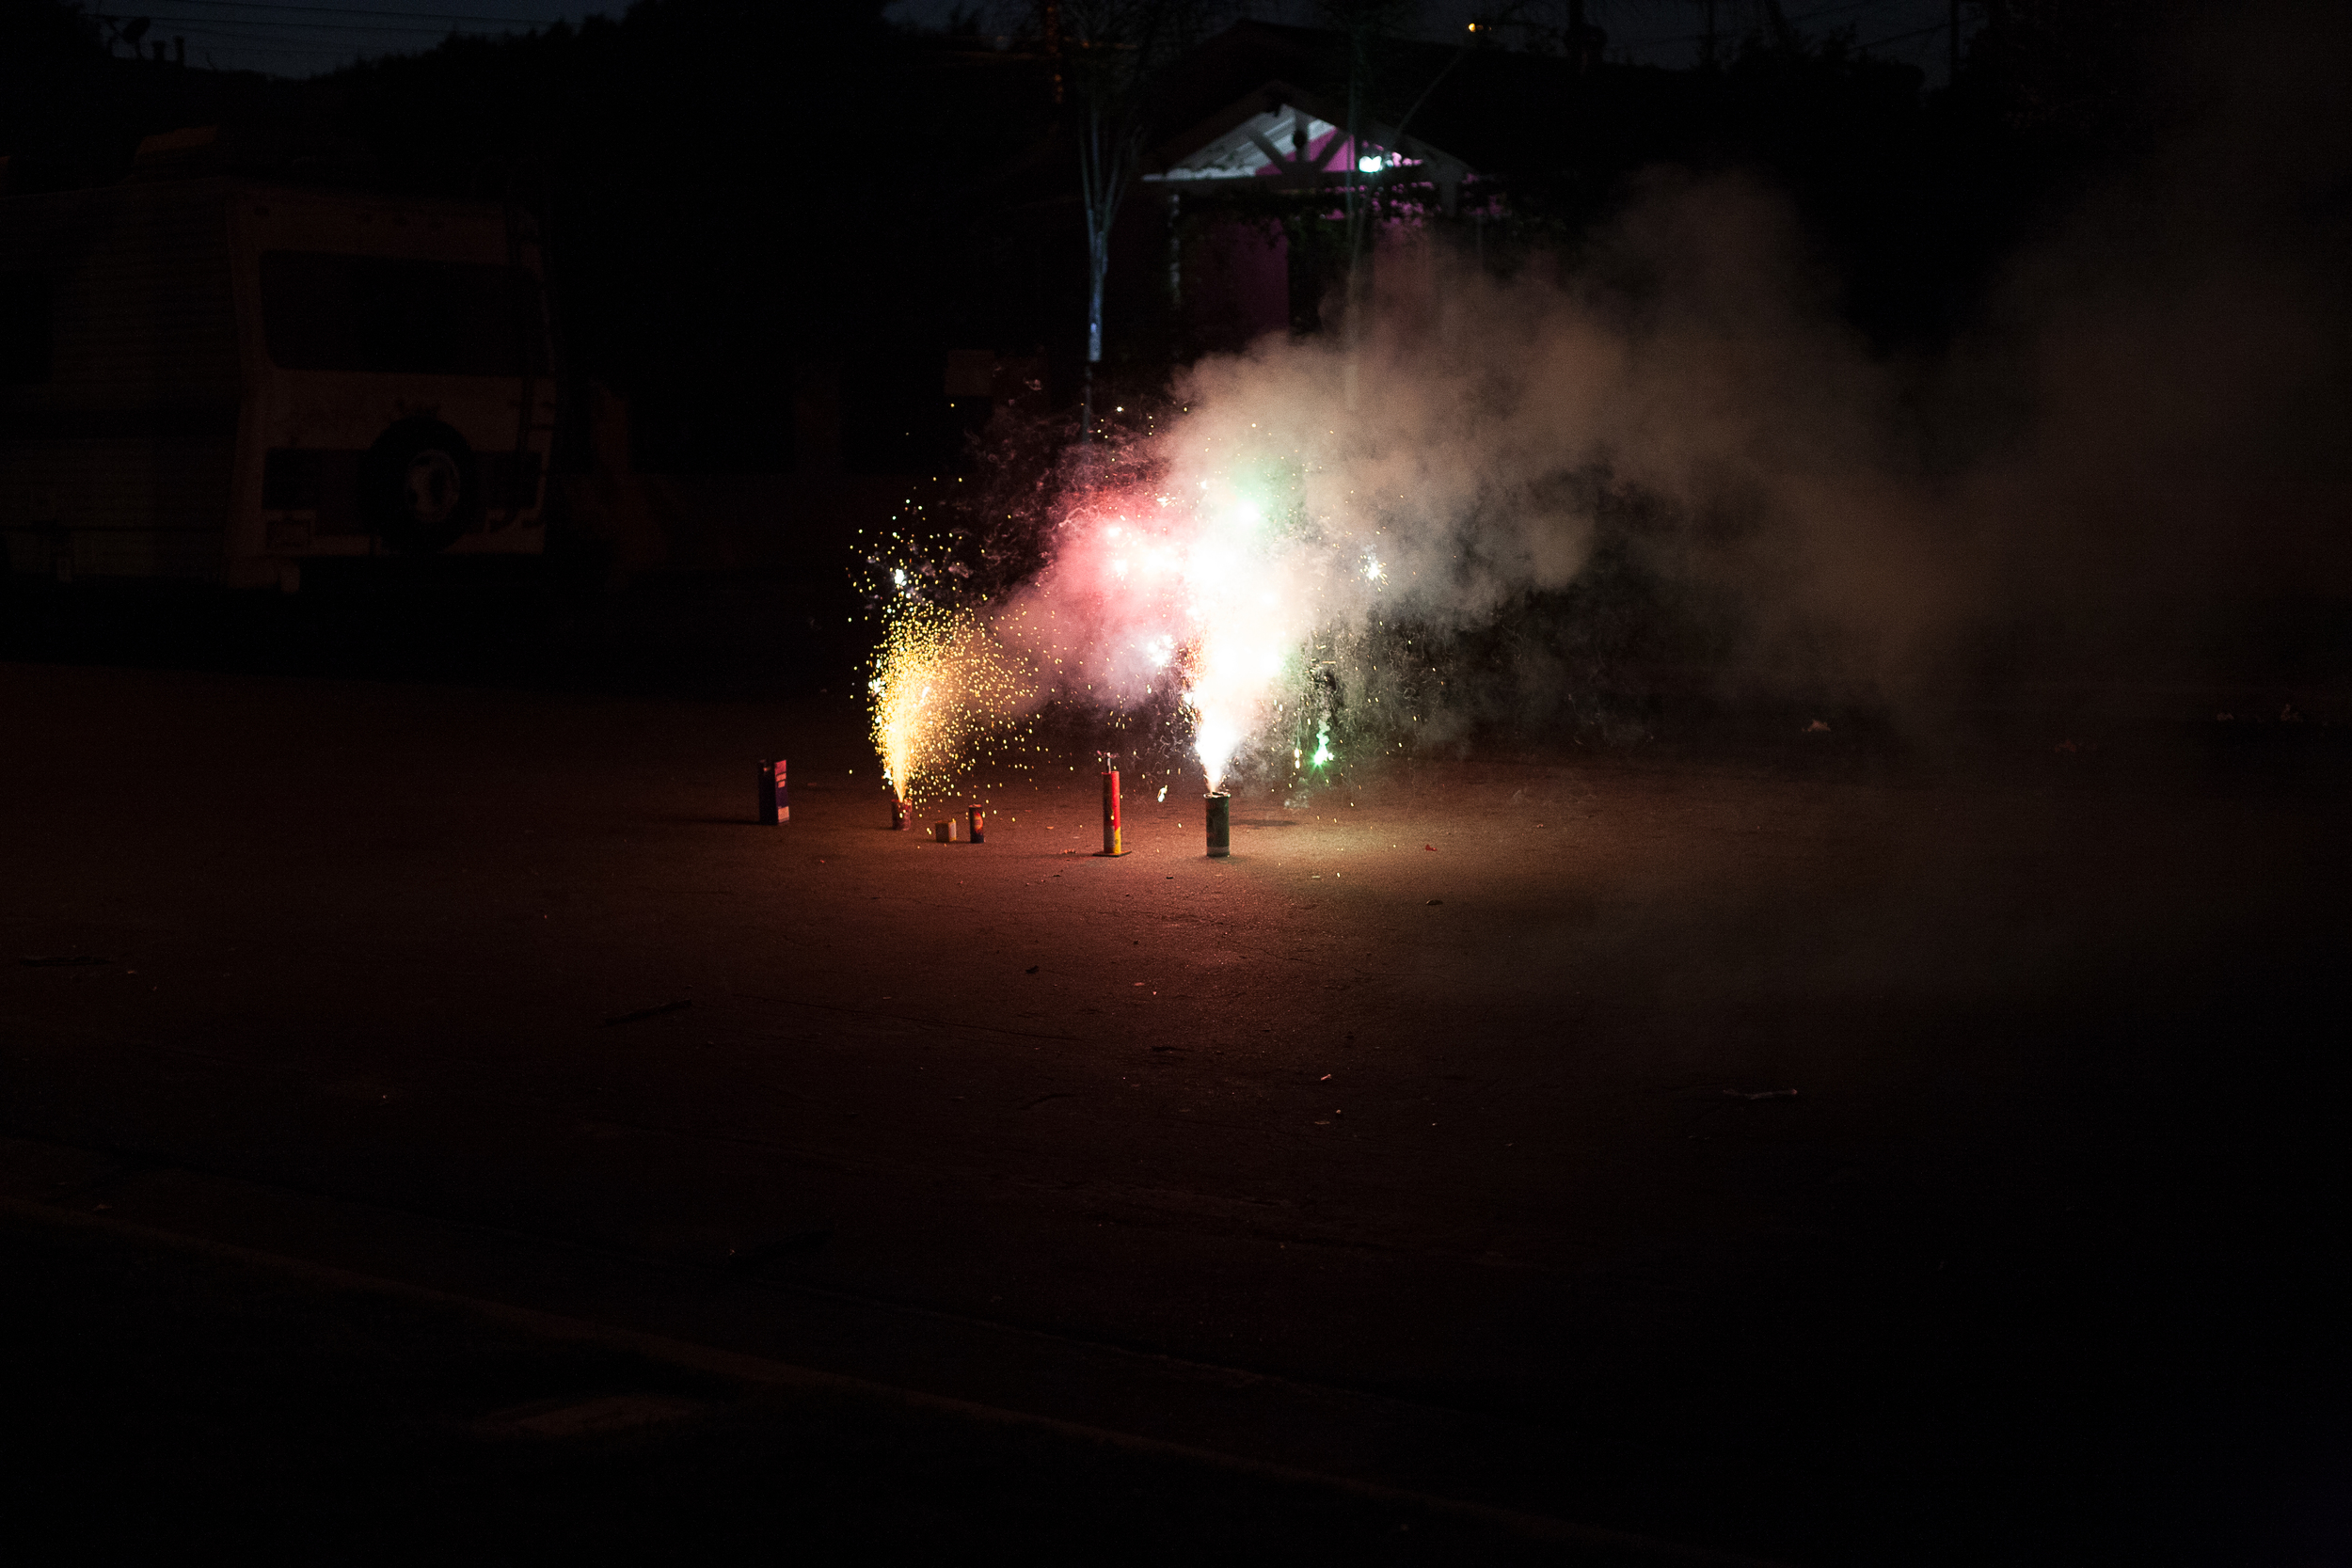   Fireworks on East 88th Street, Los Angeles  2014 